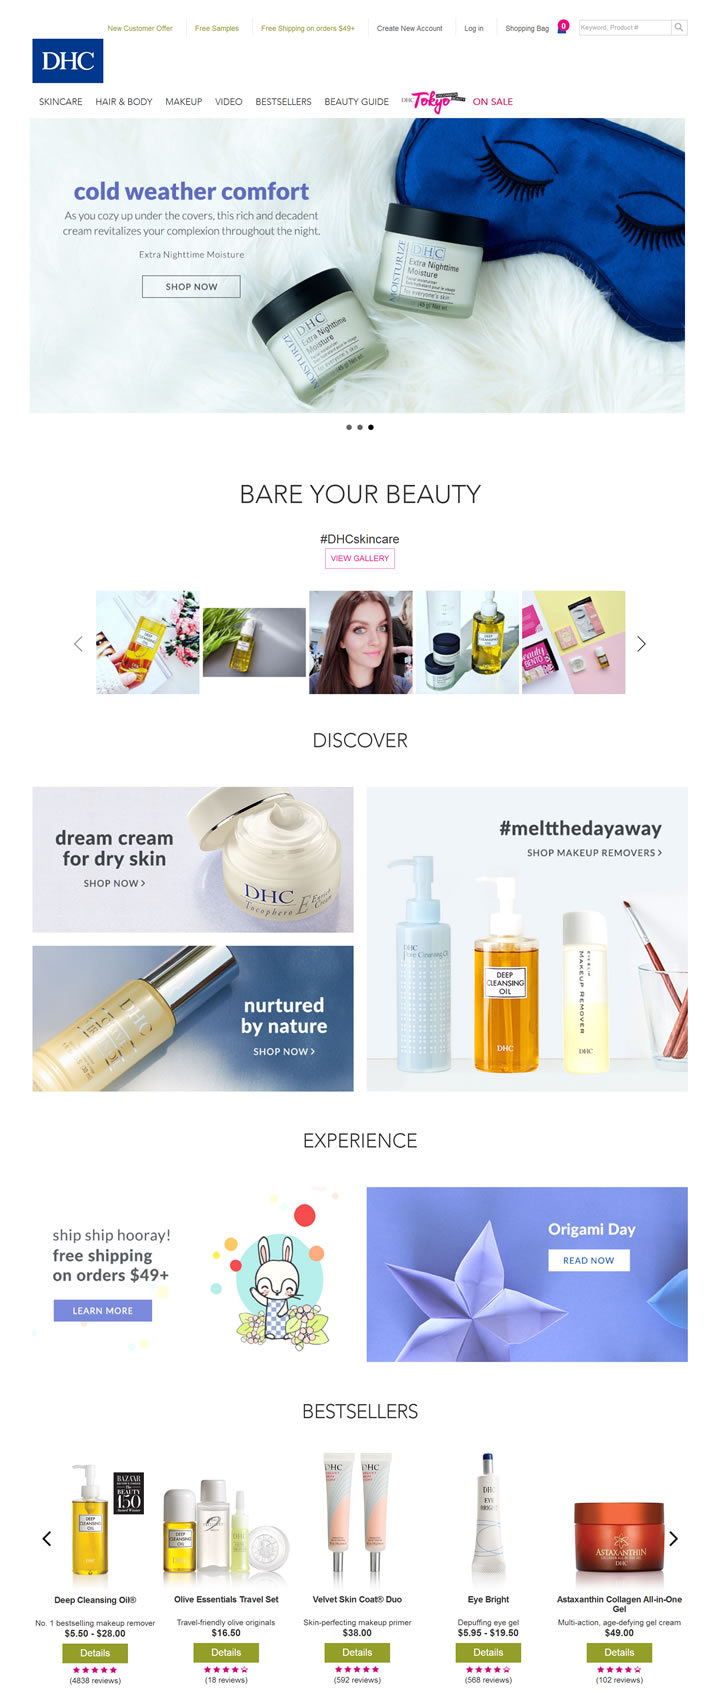 DHC美国官网：日本通信销售第一的化妆品品牌